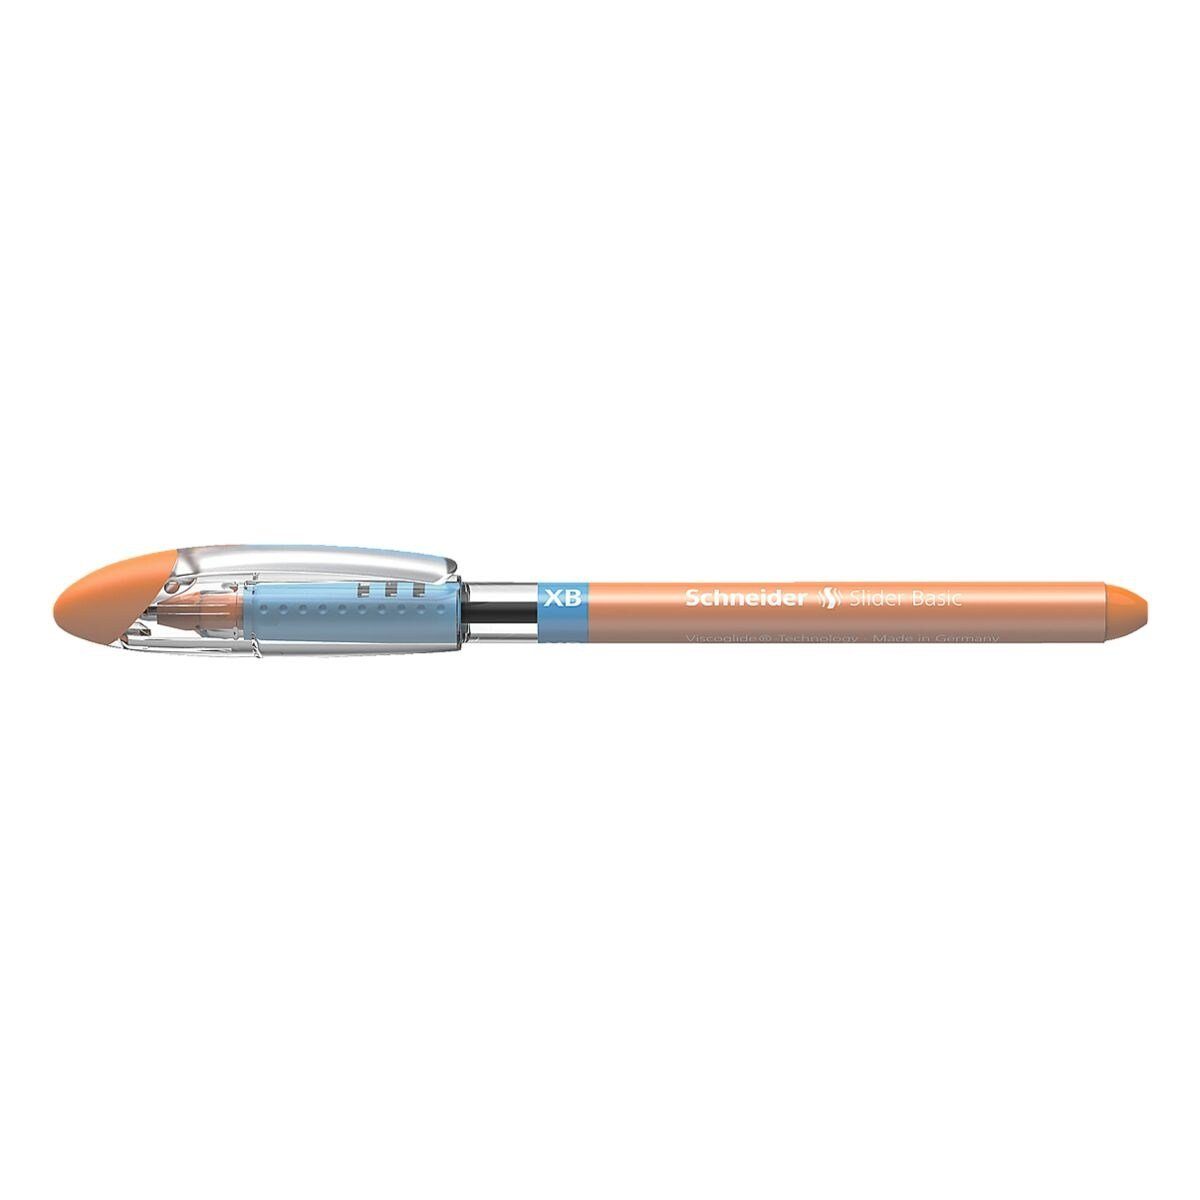 Schneider Kugelschreiber Slider XB 0,7 orange (XB) mm mit Kappe, Strichbreite: 1512